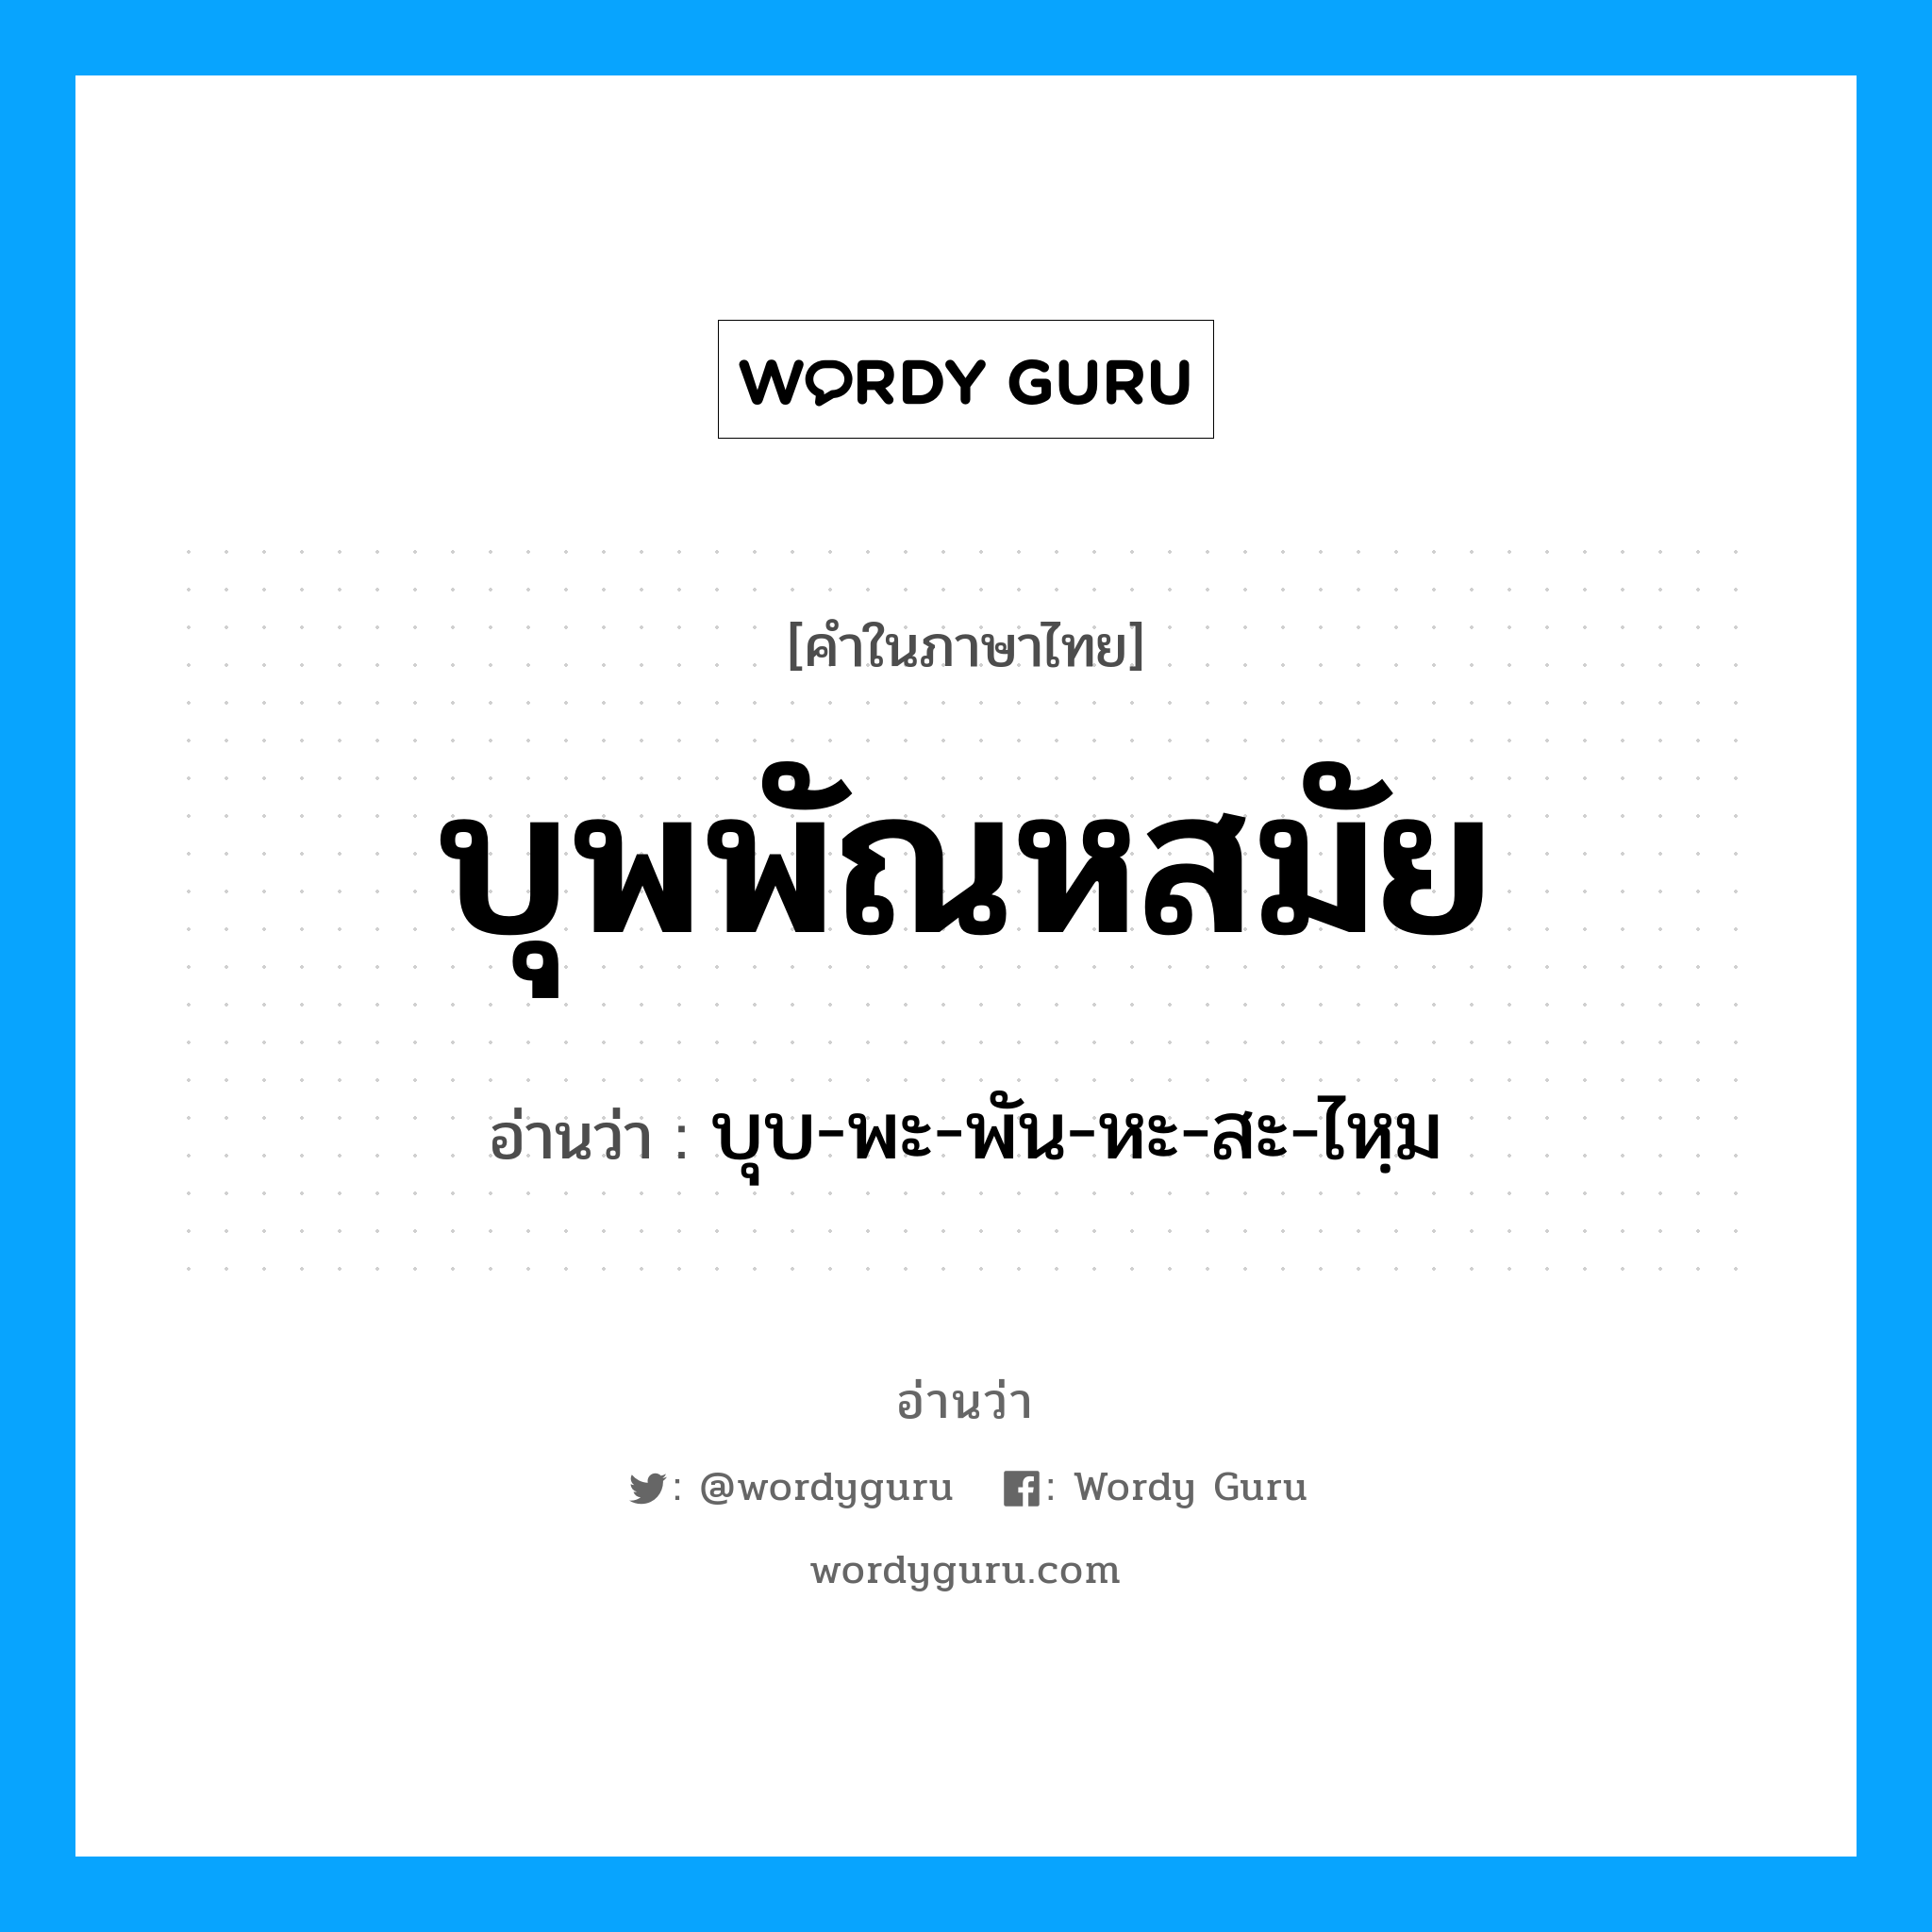 บุพพัณหสมัย อ่านว่า?, คำในภาษาไทย บุพพัณหสมัย อ่านว่า บุบ-พะ-พัน-หะ-สะ-ไหฺม